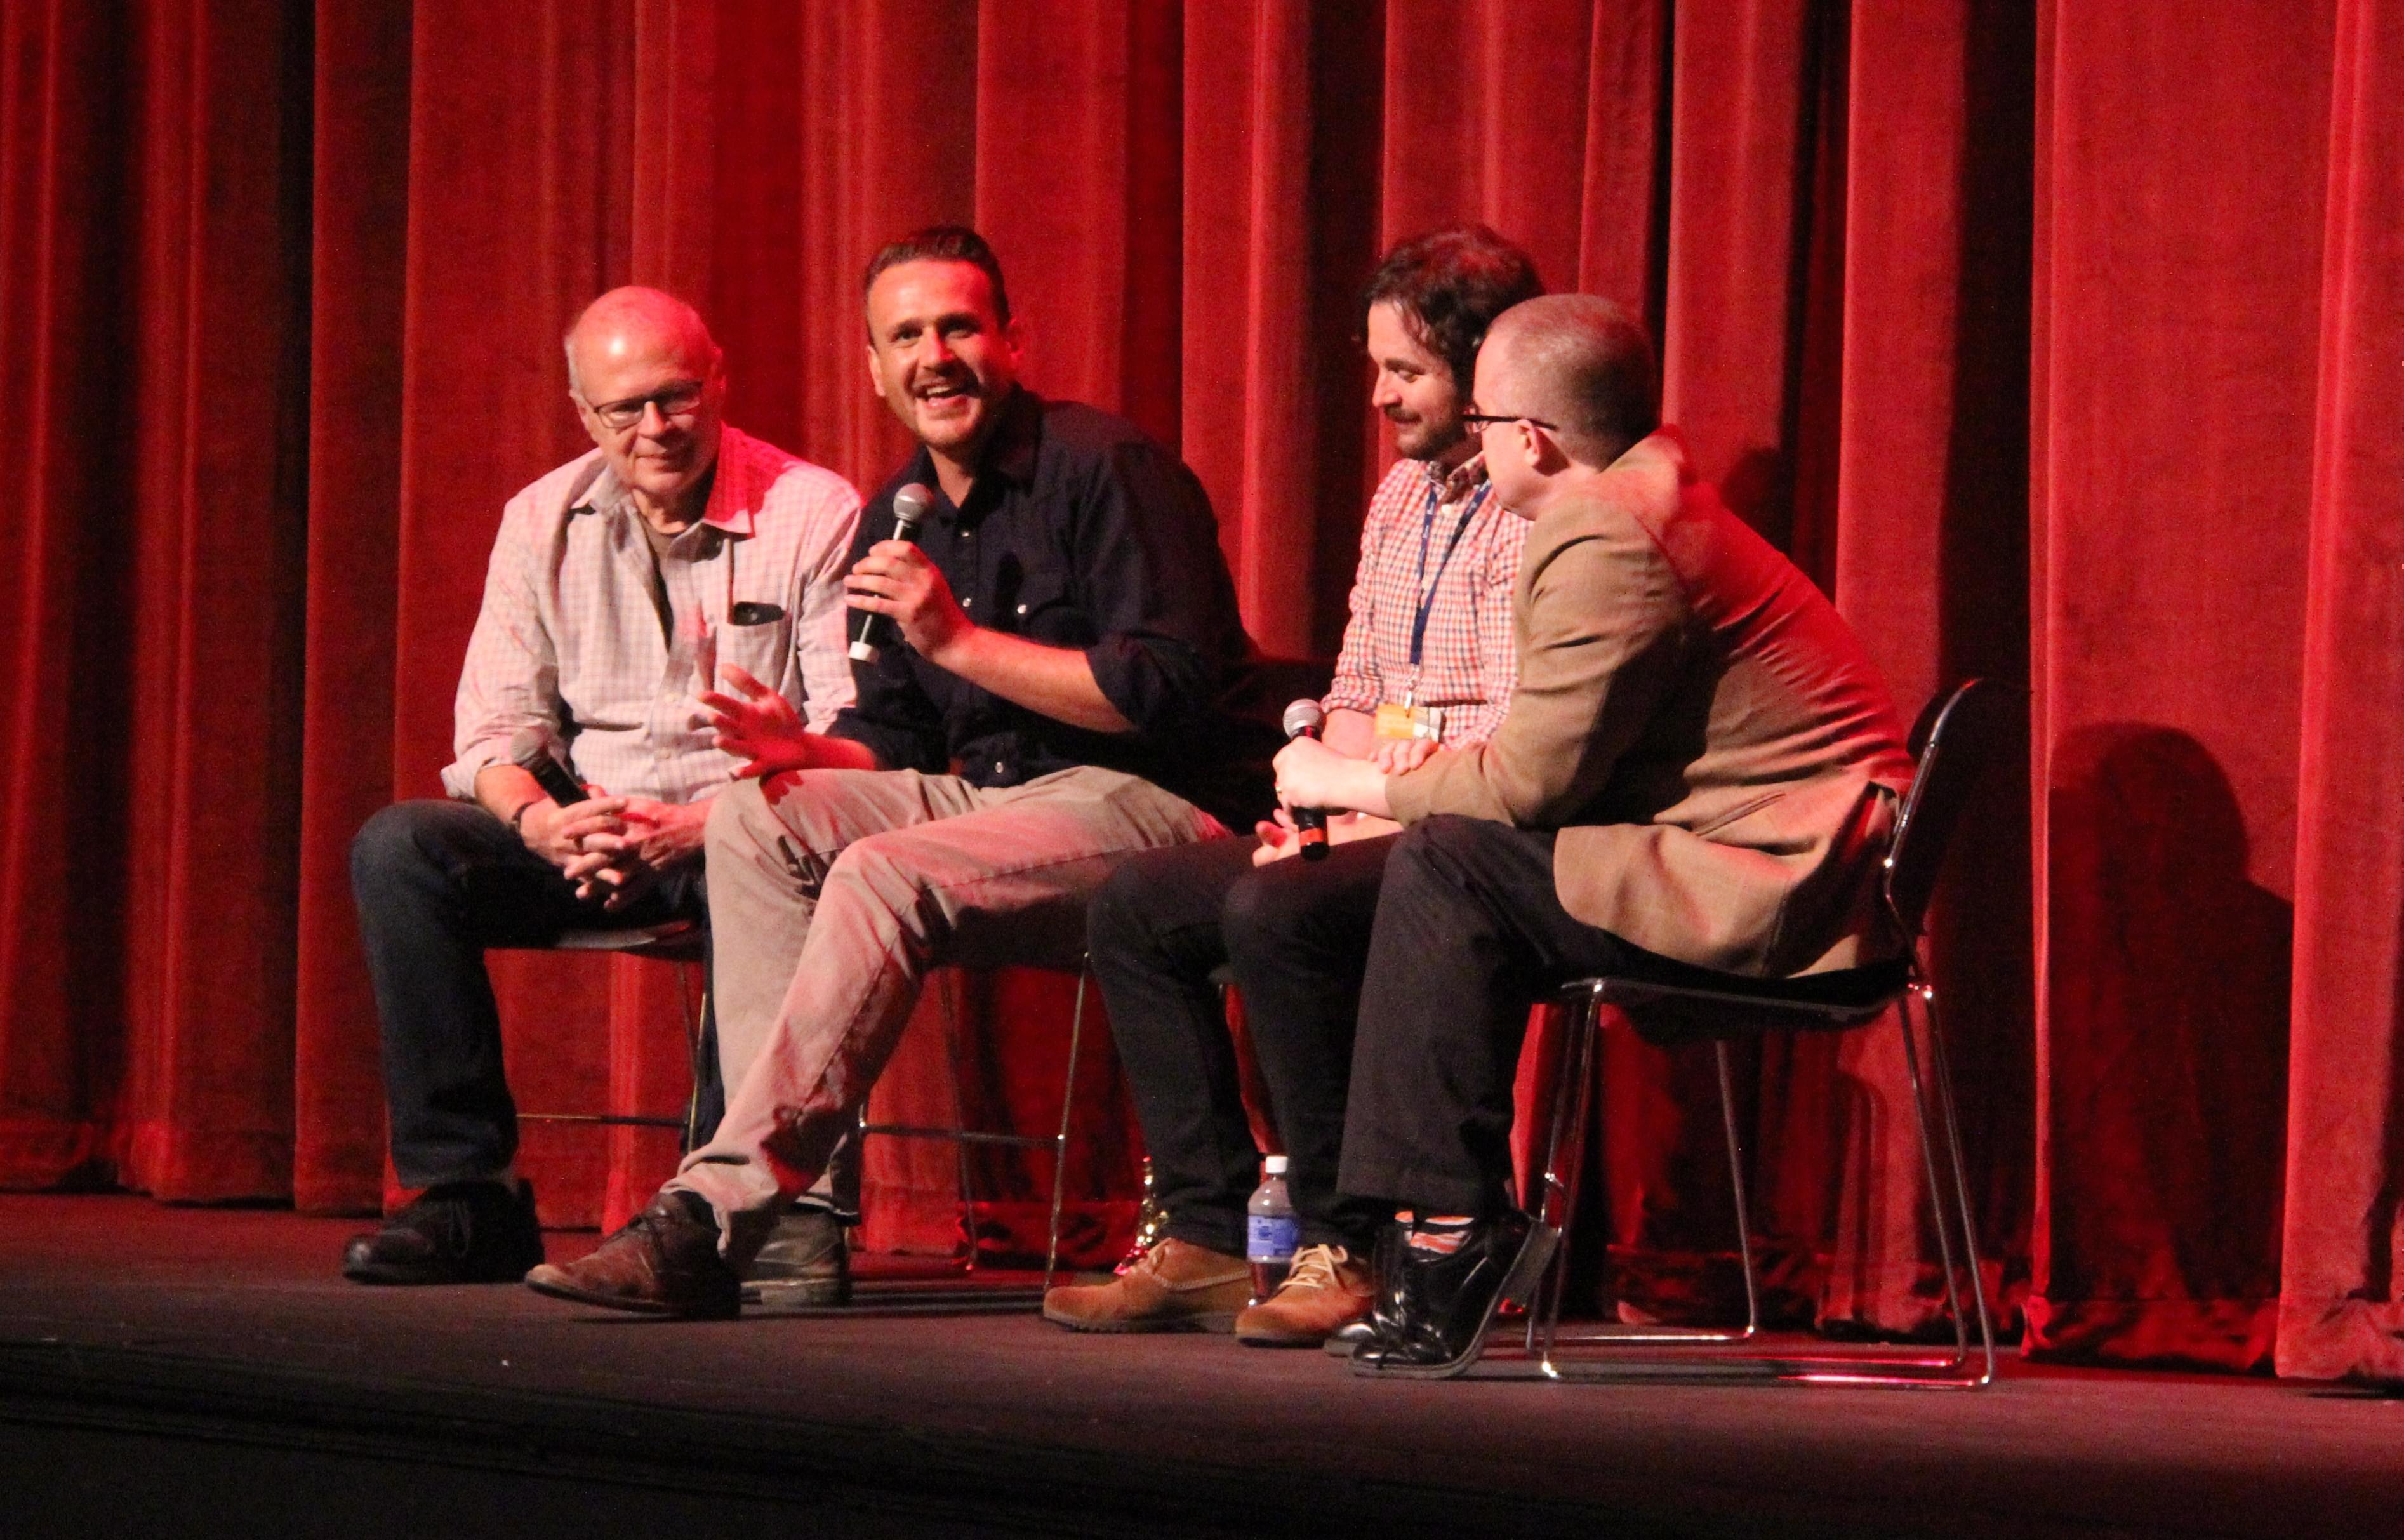 Ebertfest Director Nate Kohn, actor Jason Segel, director James Ponsoldt, and film critic Matt Zoller Seitz of Roger Ebert.com.